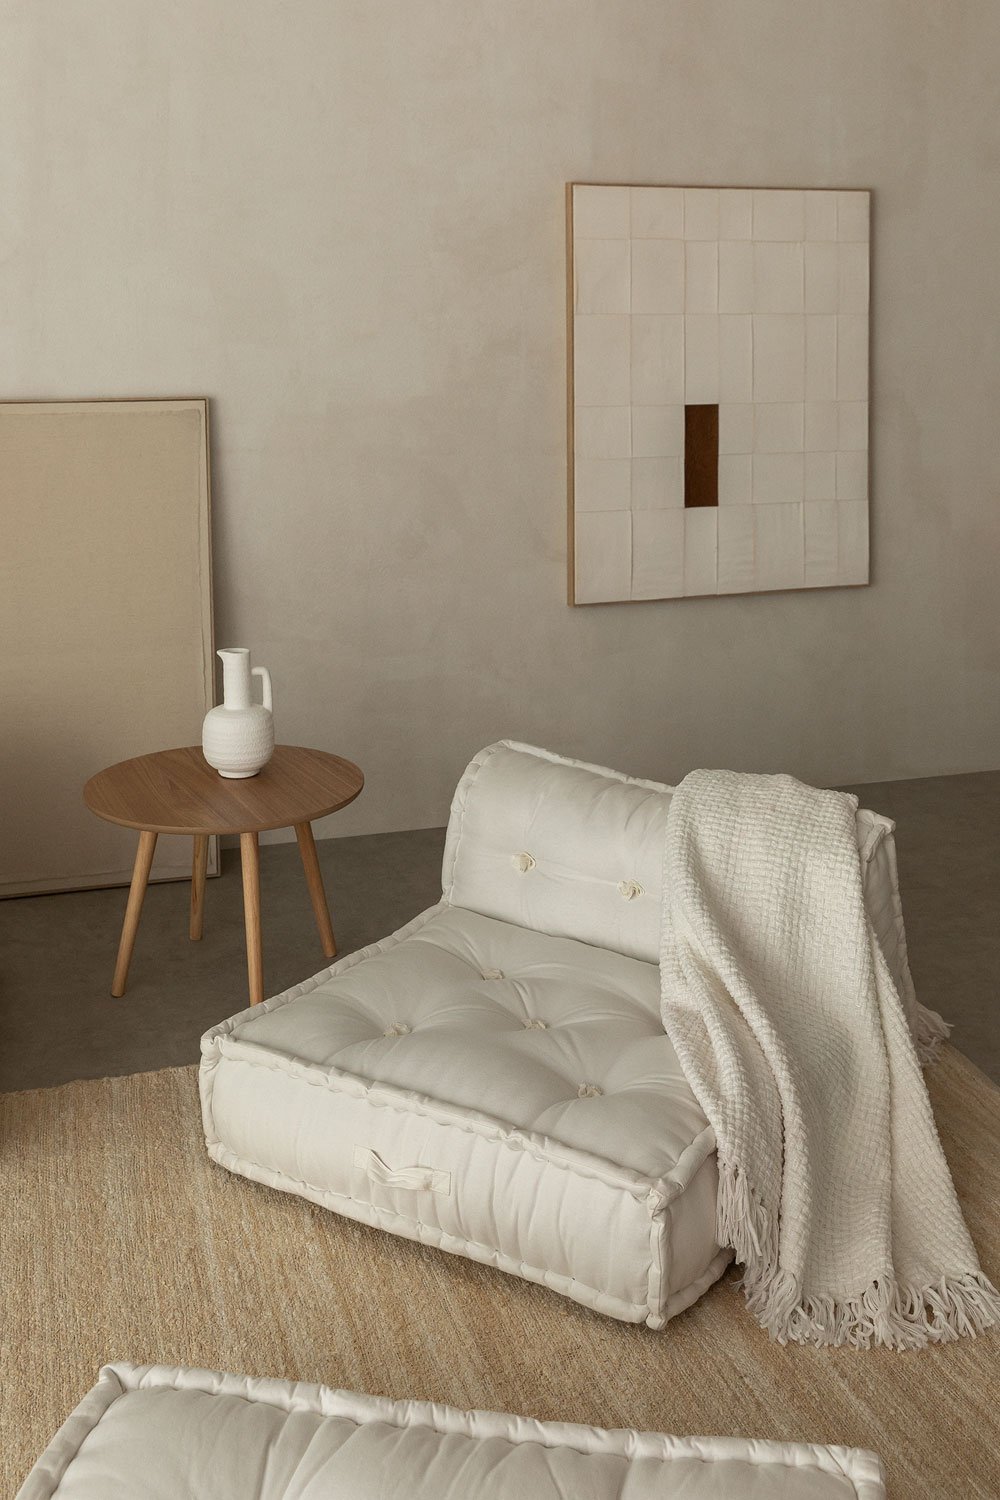 Mittelelement für modulares Sofa aus Baumwolle Dhel, Galeriebild 1